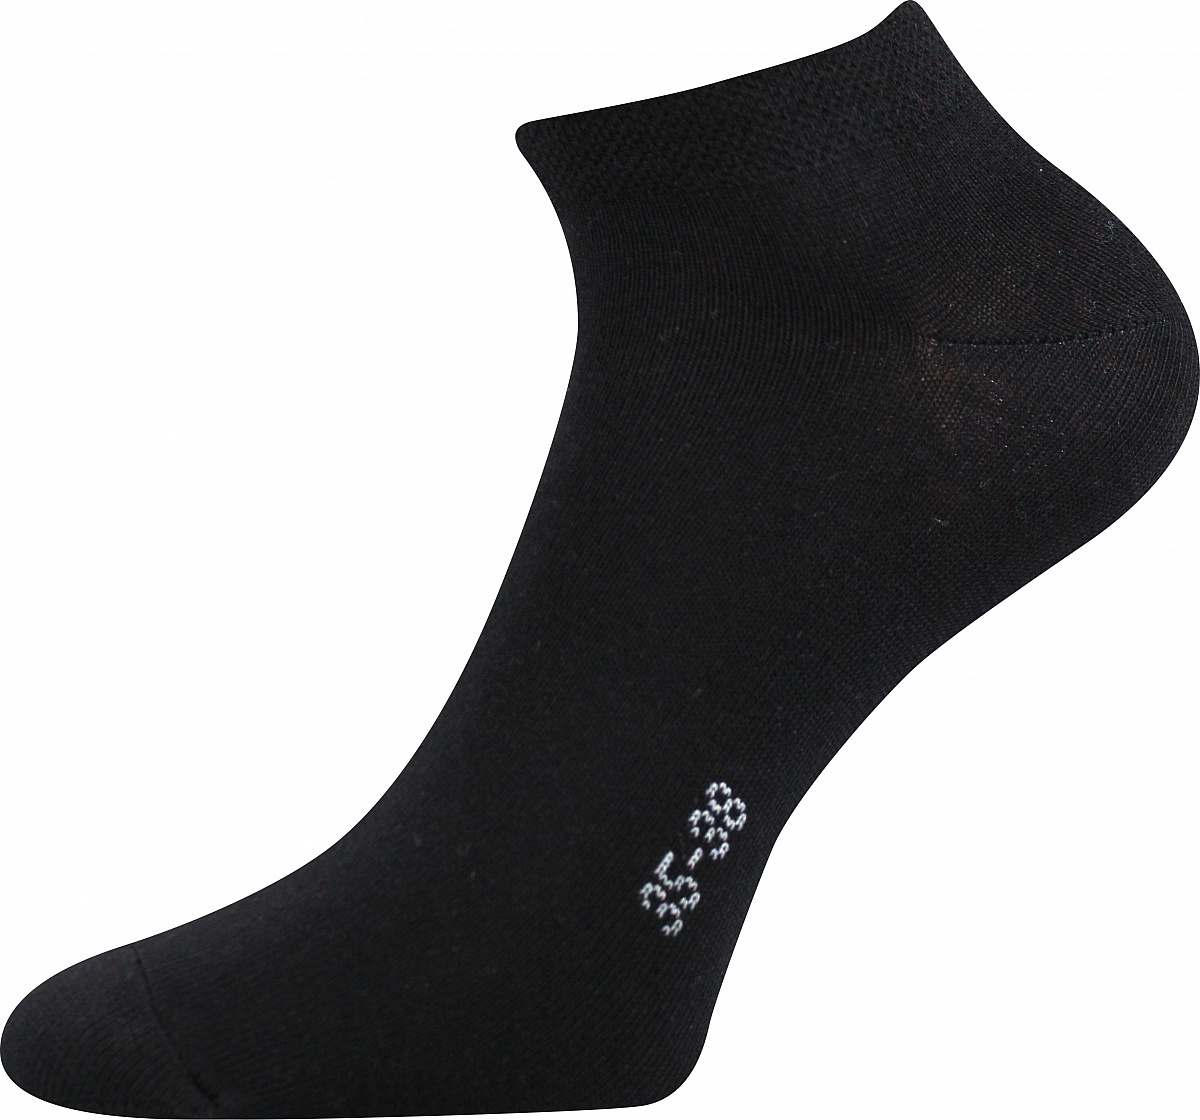 Ponožky Boma Hoho - černé, 43-46